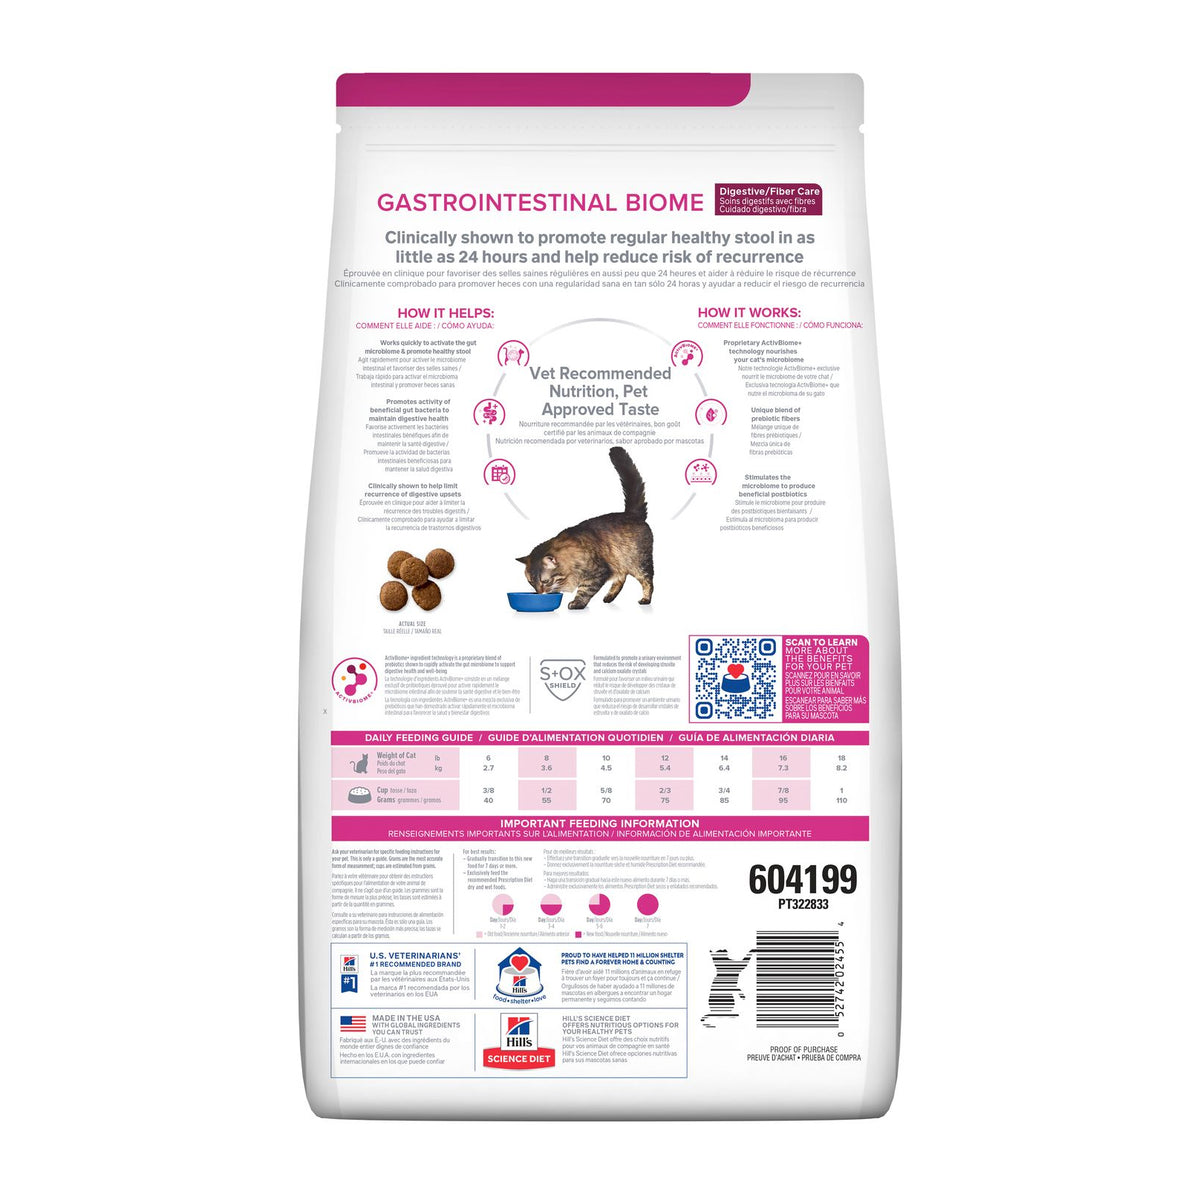 Hill&#39;s Prescription Diet Feline Gastrointestinal Biome Digestive/Fibre Care 1.8kg